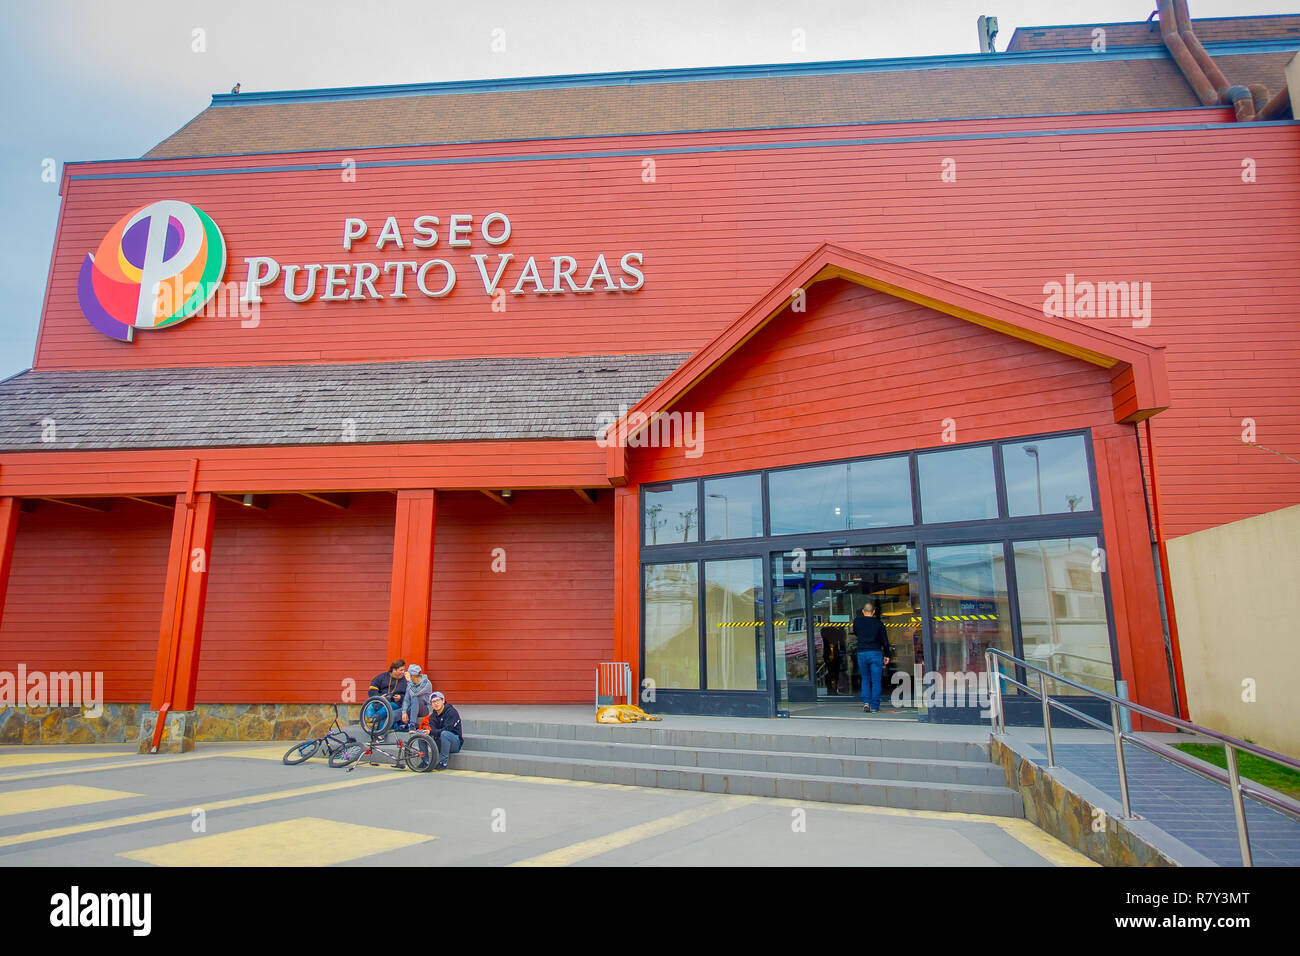 PUERTO VARAS, CHILE, September, 23, 2018: die Gruppe der Freunde bei der Paseo Puerto Varas, riesige Orange Gebäude aus Holz Chile, Südamerika Stockfoto